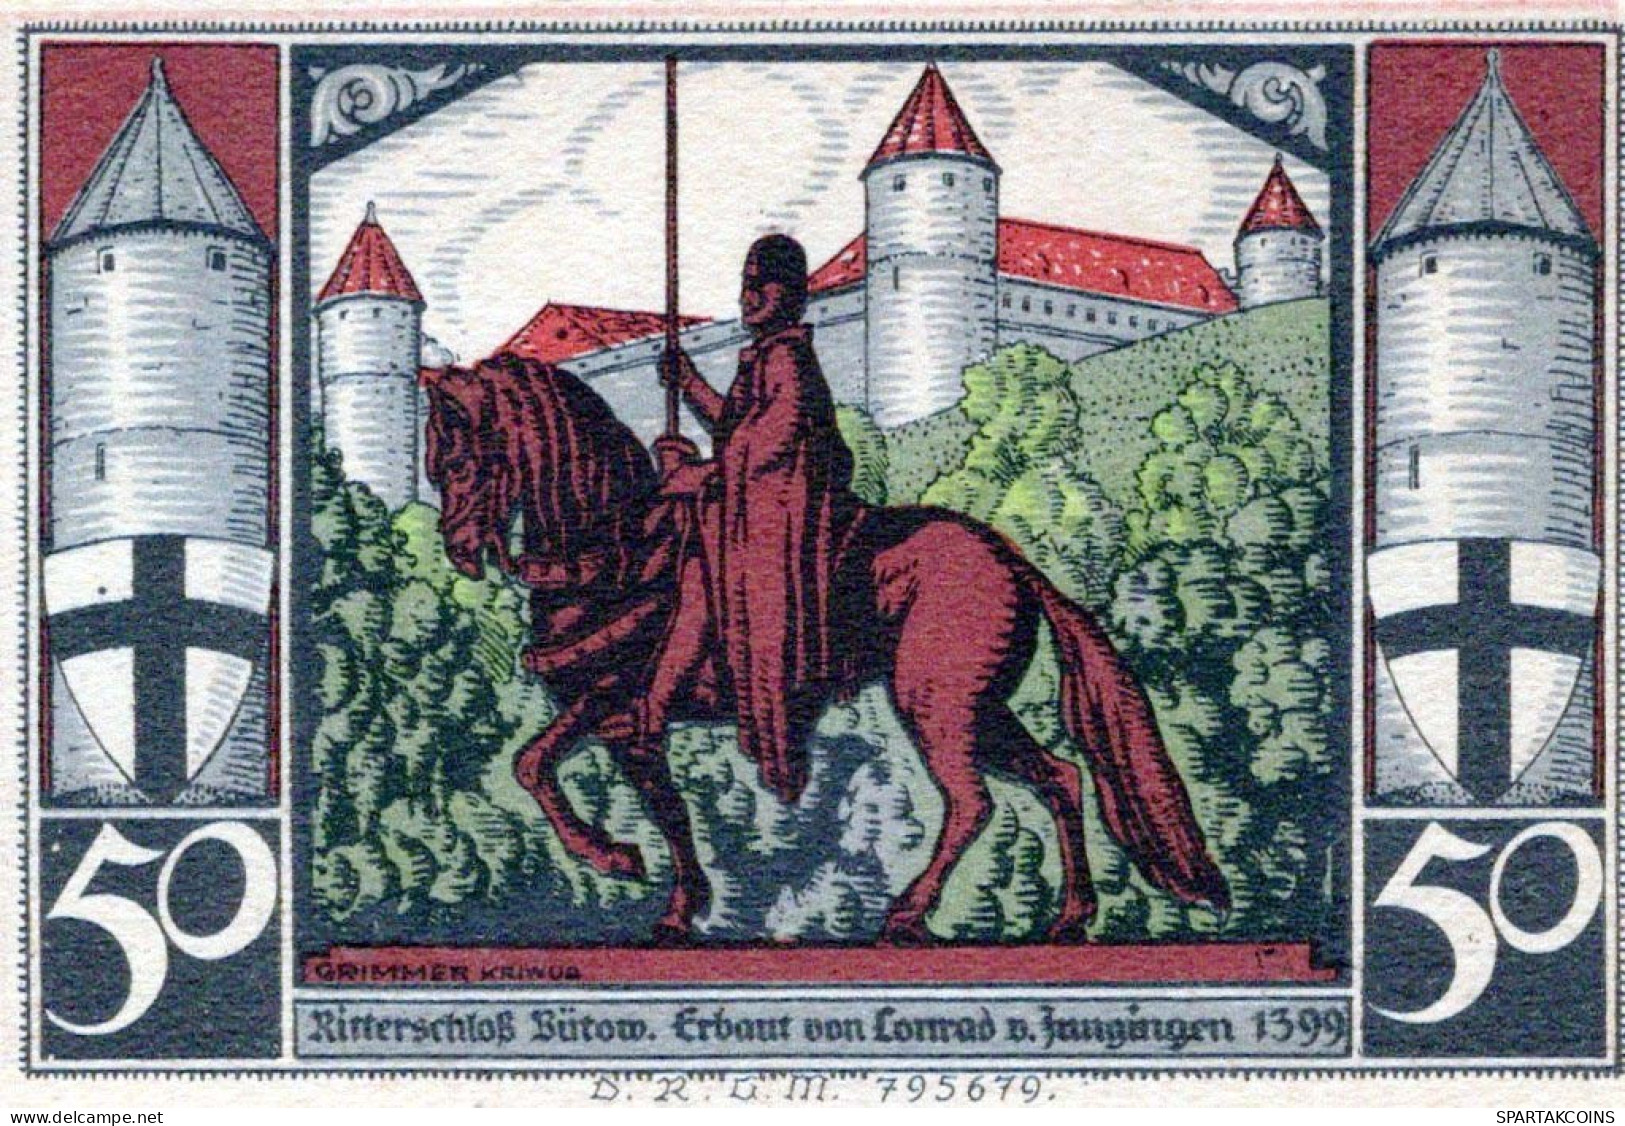 50 PFENNIG 1922 Stadt BÜTOW Pomerania UNC DEUTSCHLAND Notgeld Banknote #PC884 - [11] Local Banknote Issues